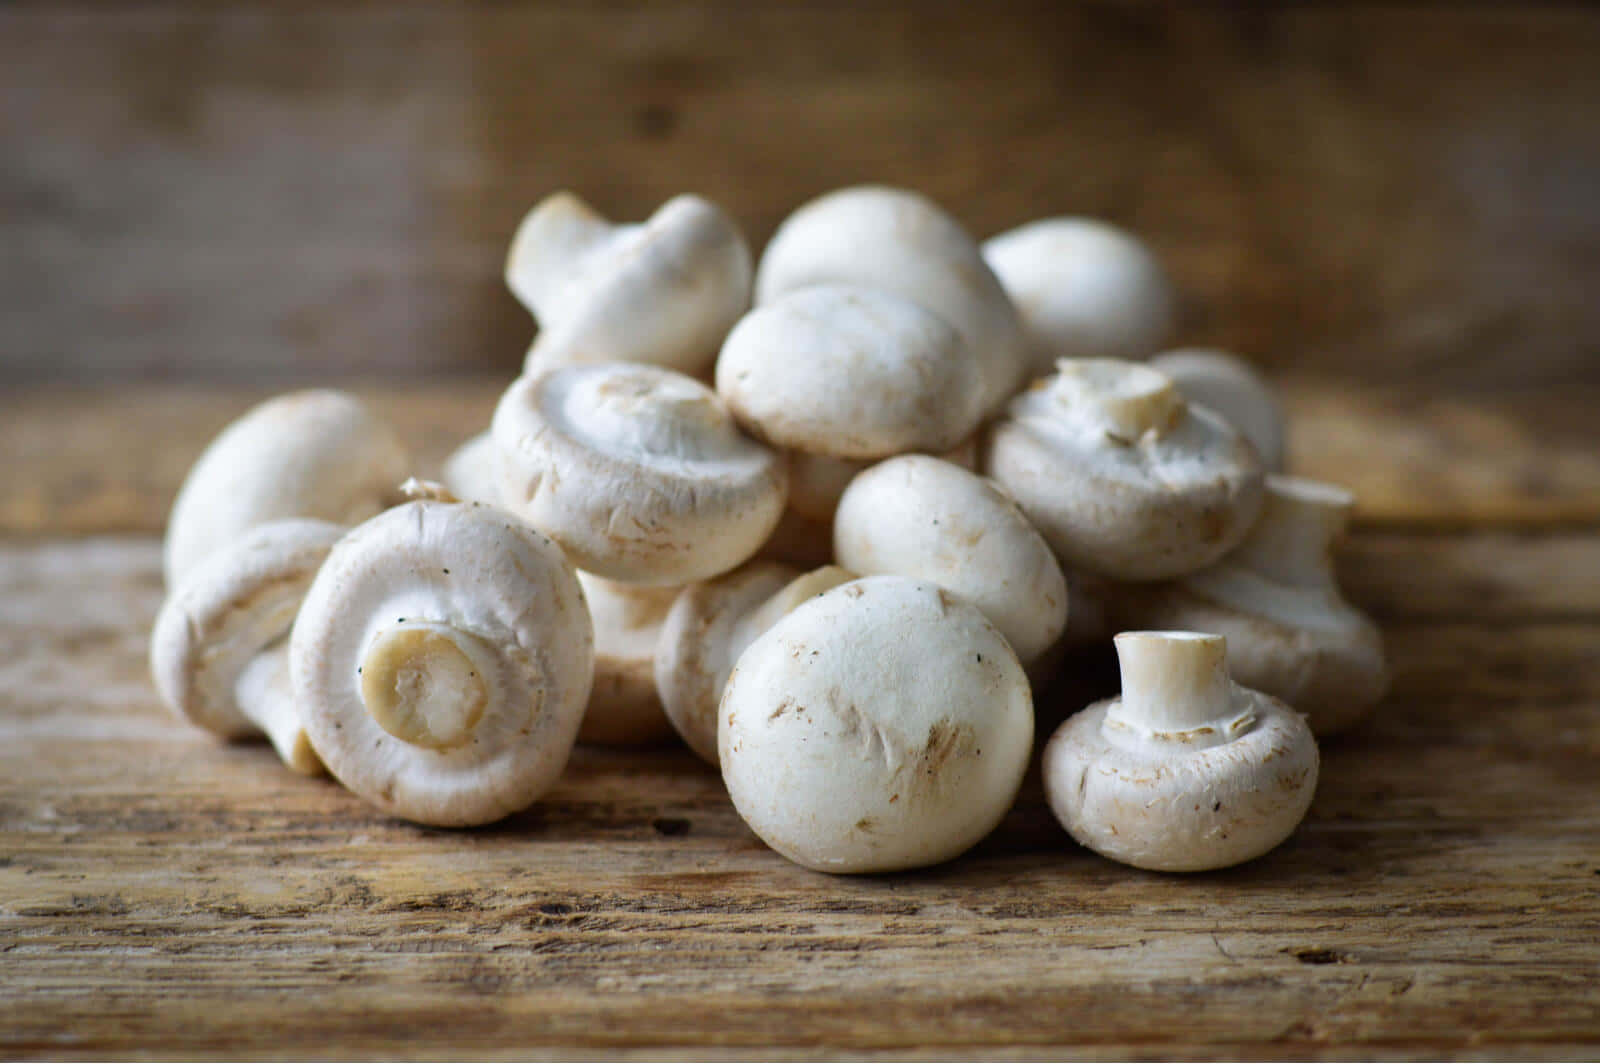 A Unique Assortment of Mushroom Types